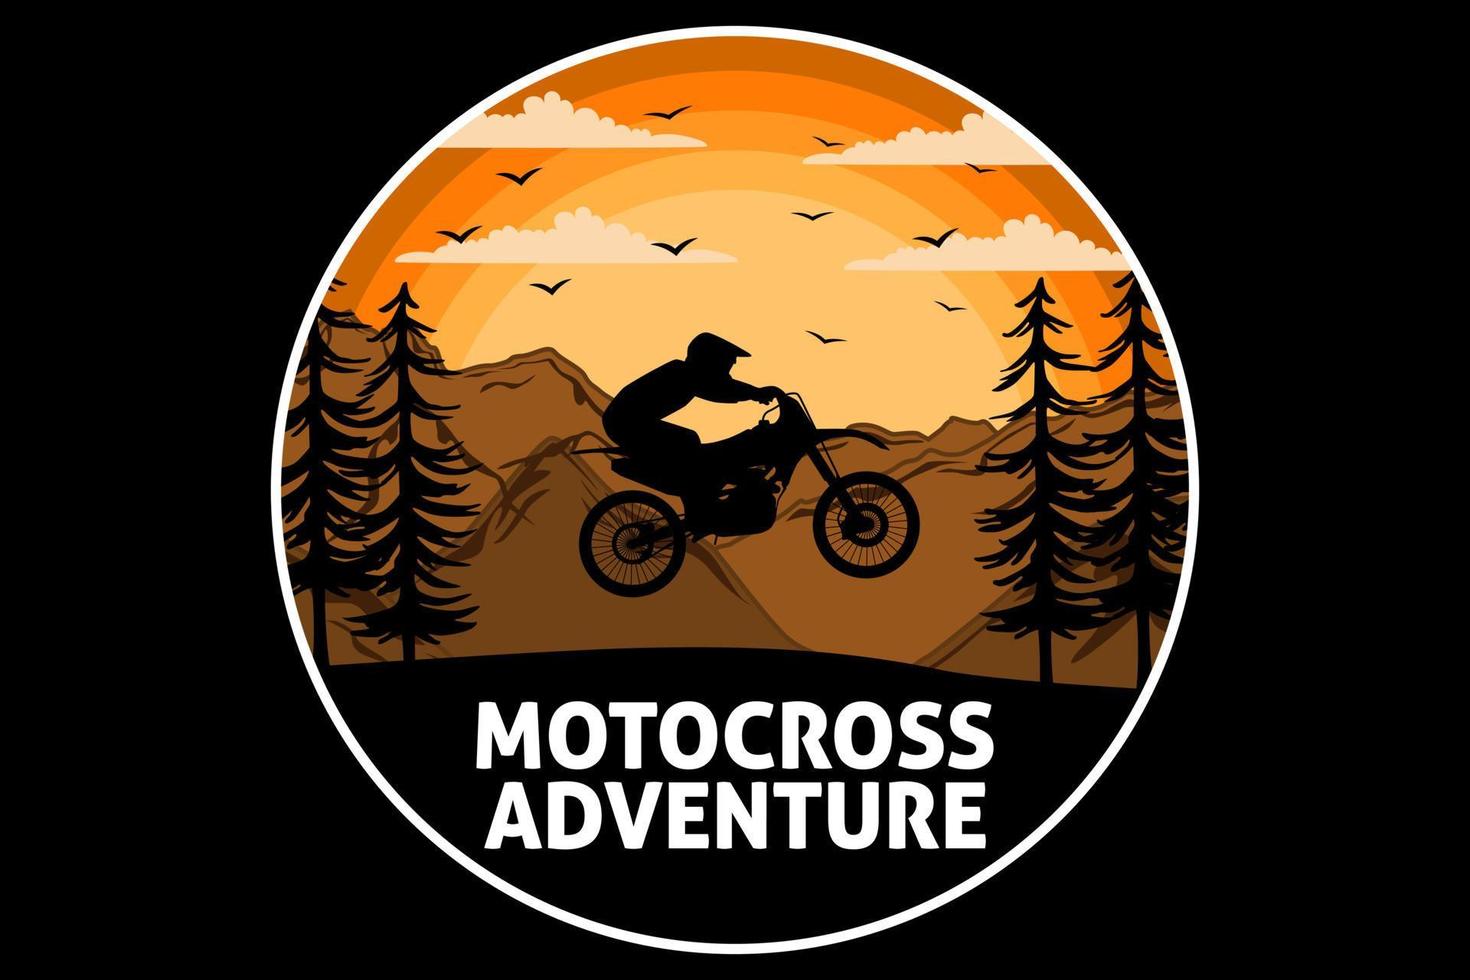 motocross aventure design vintage rétro vecteur